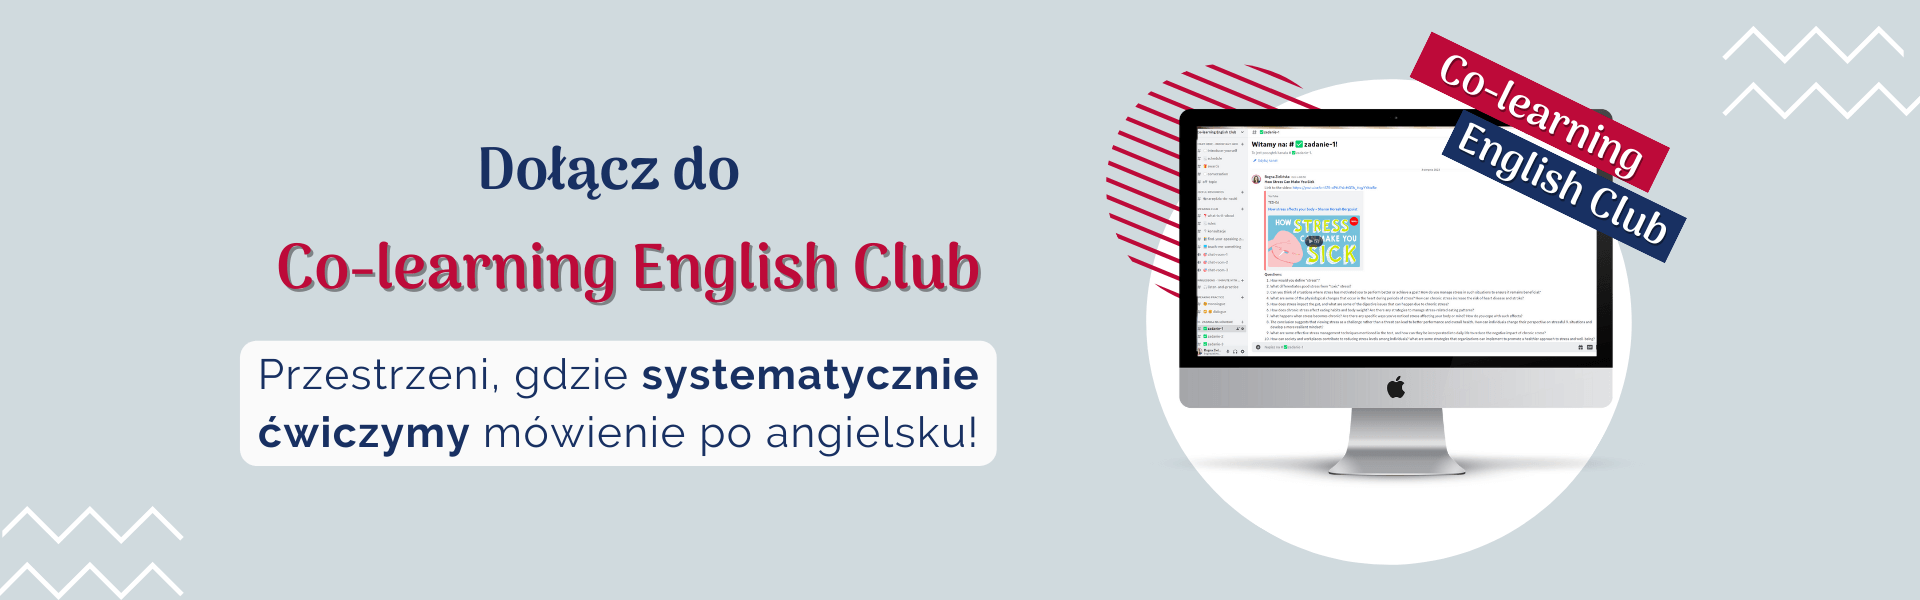 club banner 2 1 - Nauka języków online